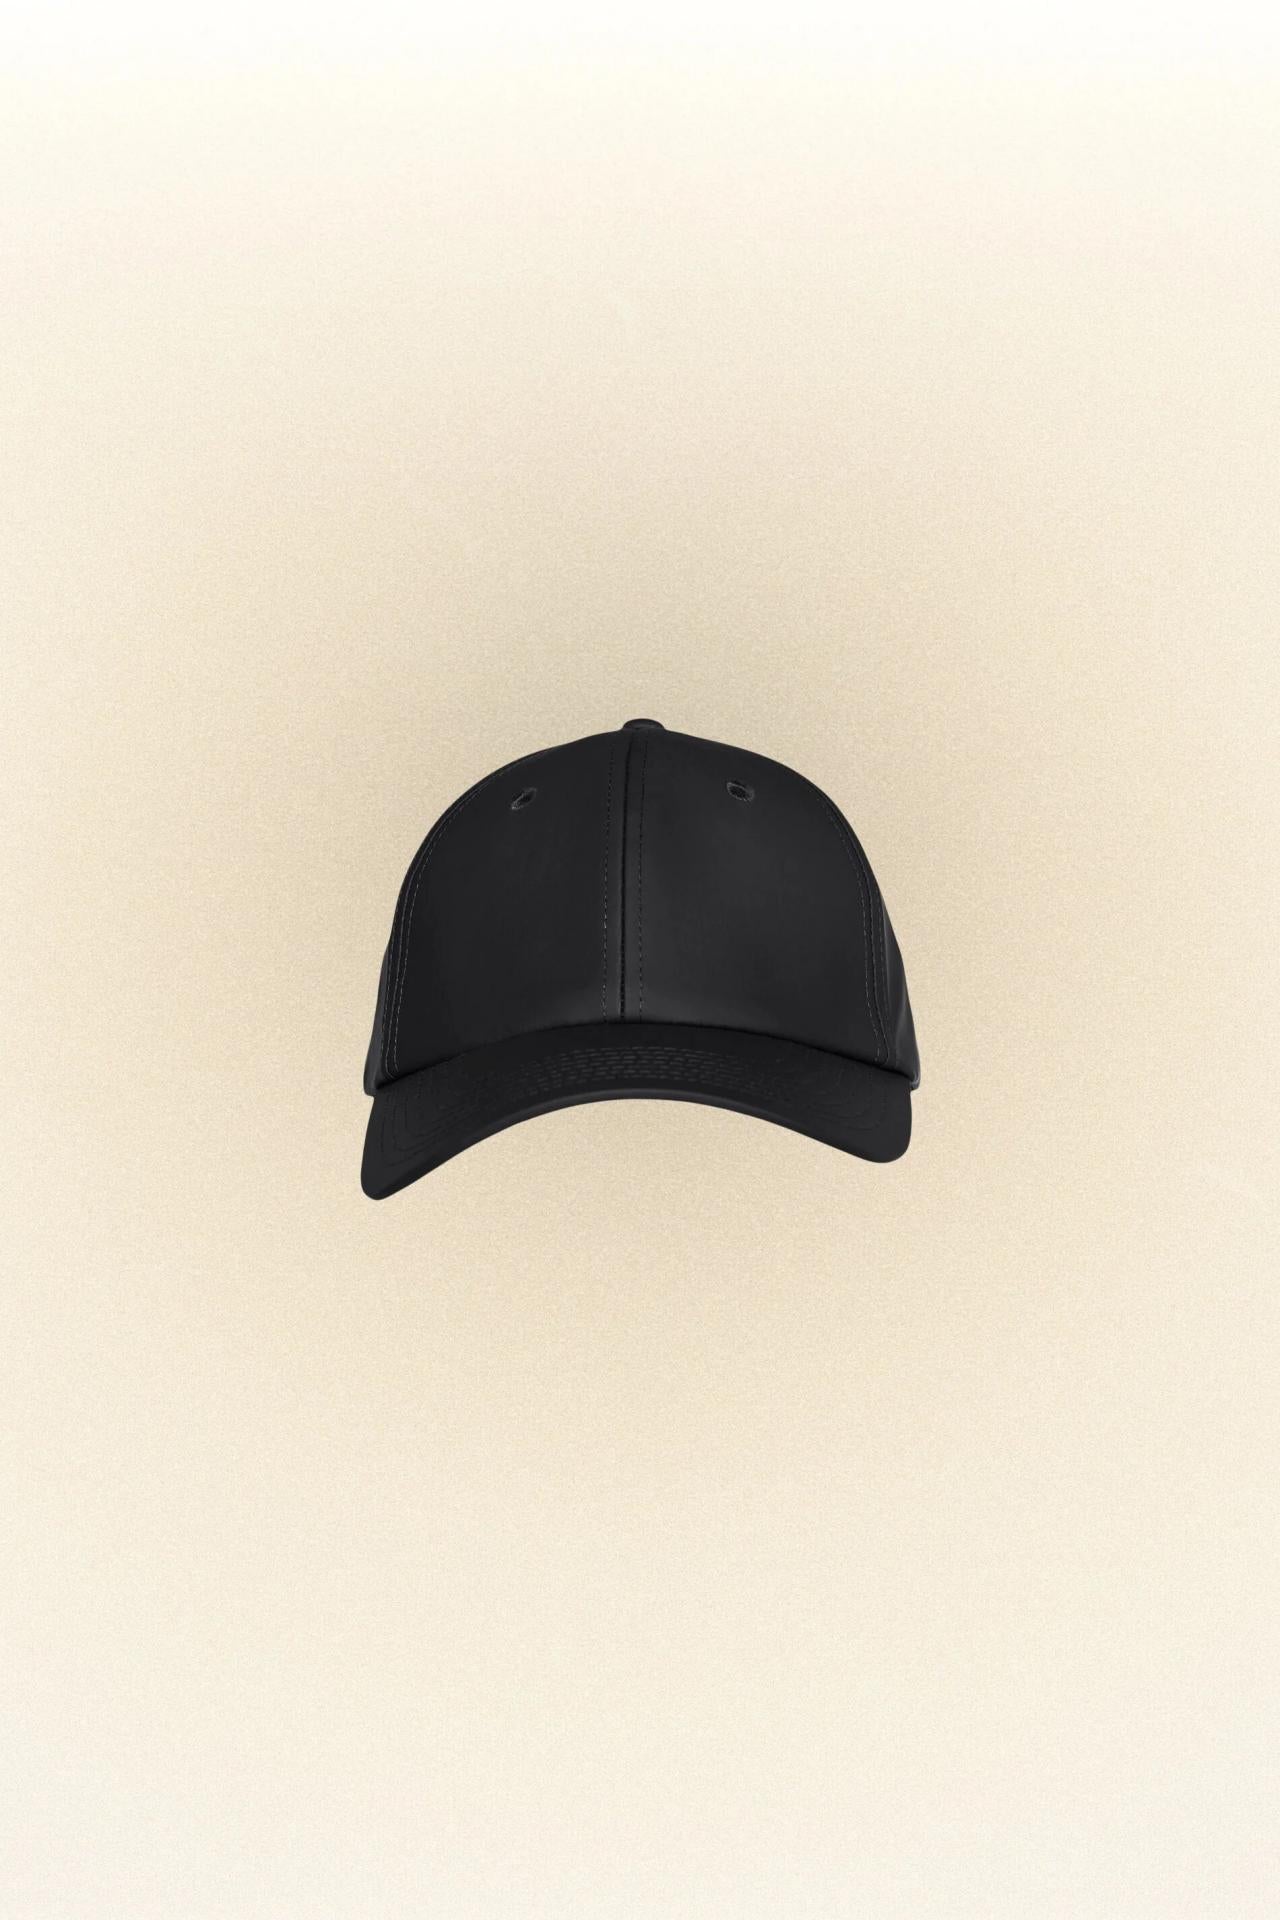 Rains Baseballkappe Cap One size - Variante: schwarz